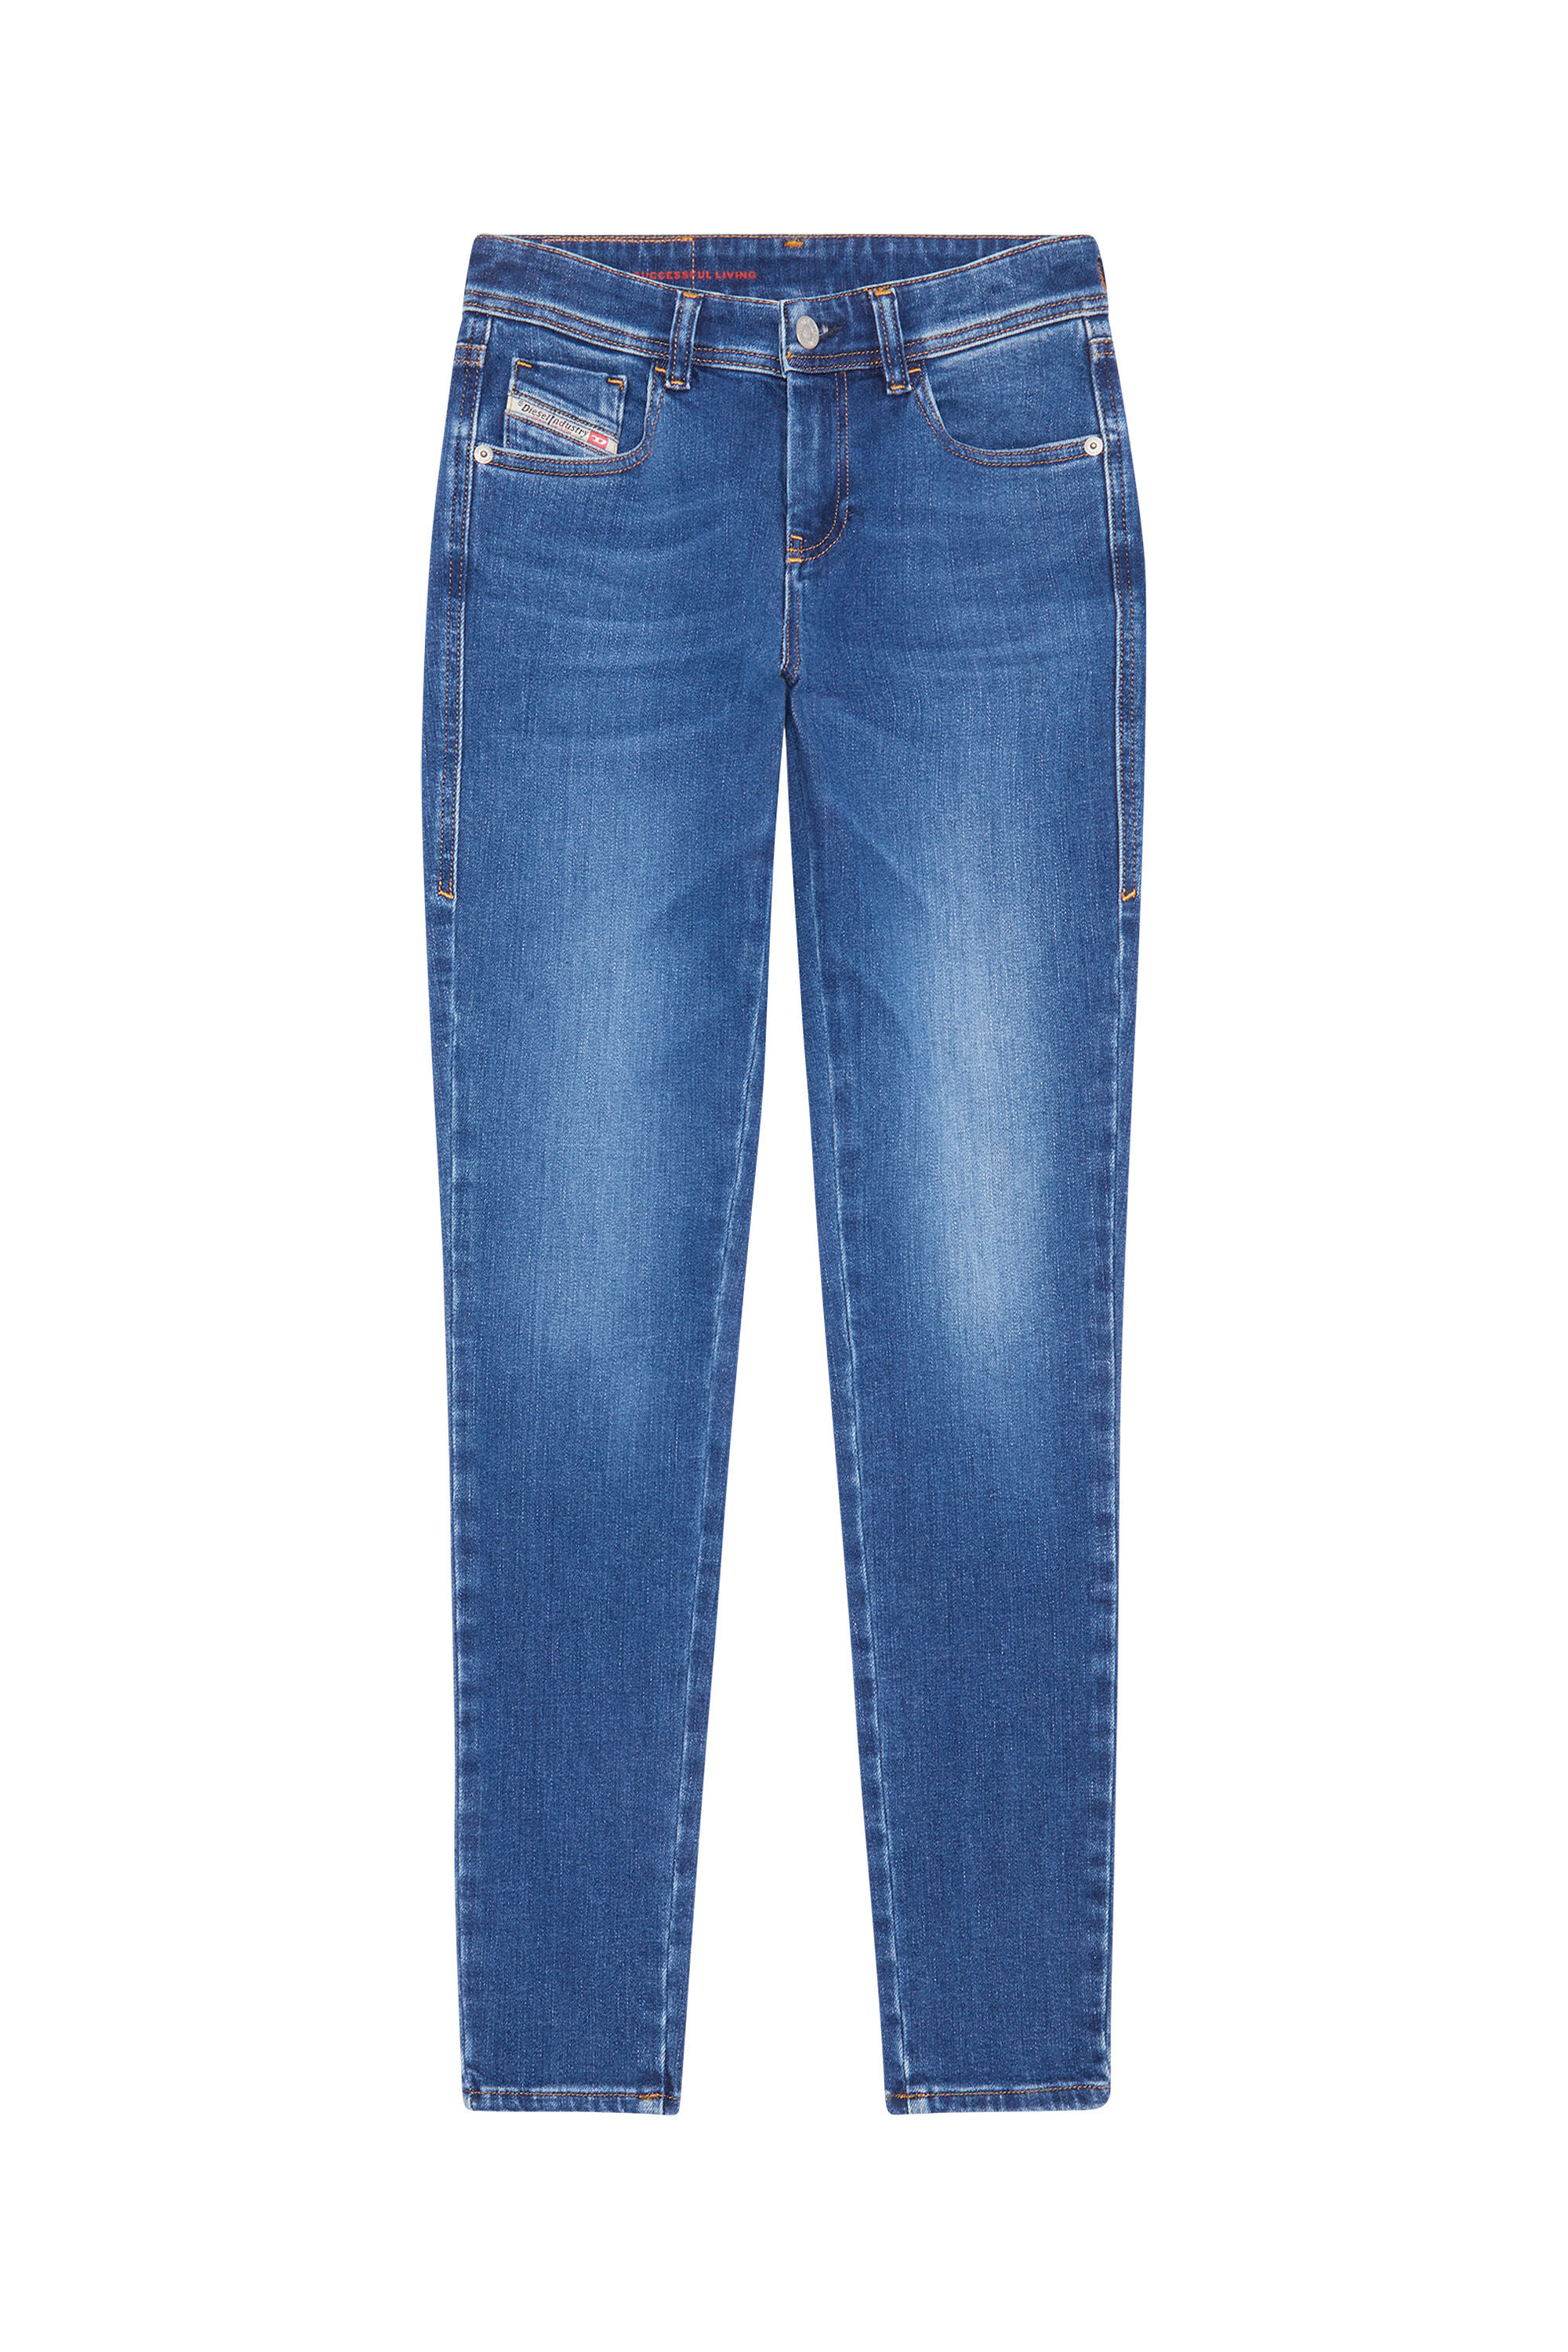 Diesel - Super skinny Jeans 2017 Slandy 09C21, Medium blue - Image 2